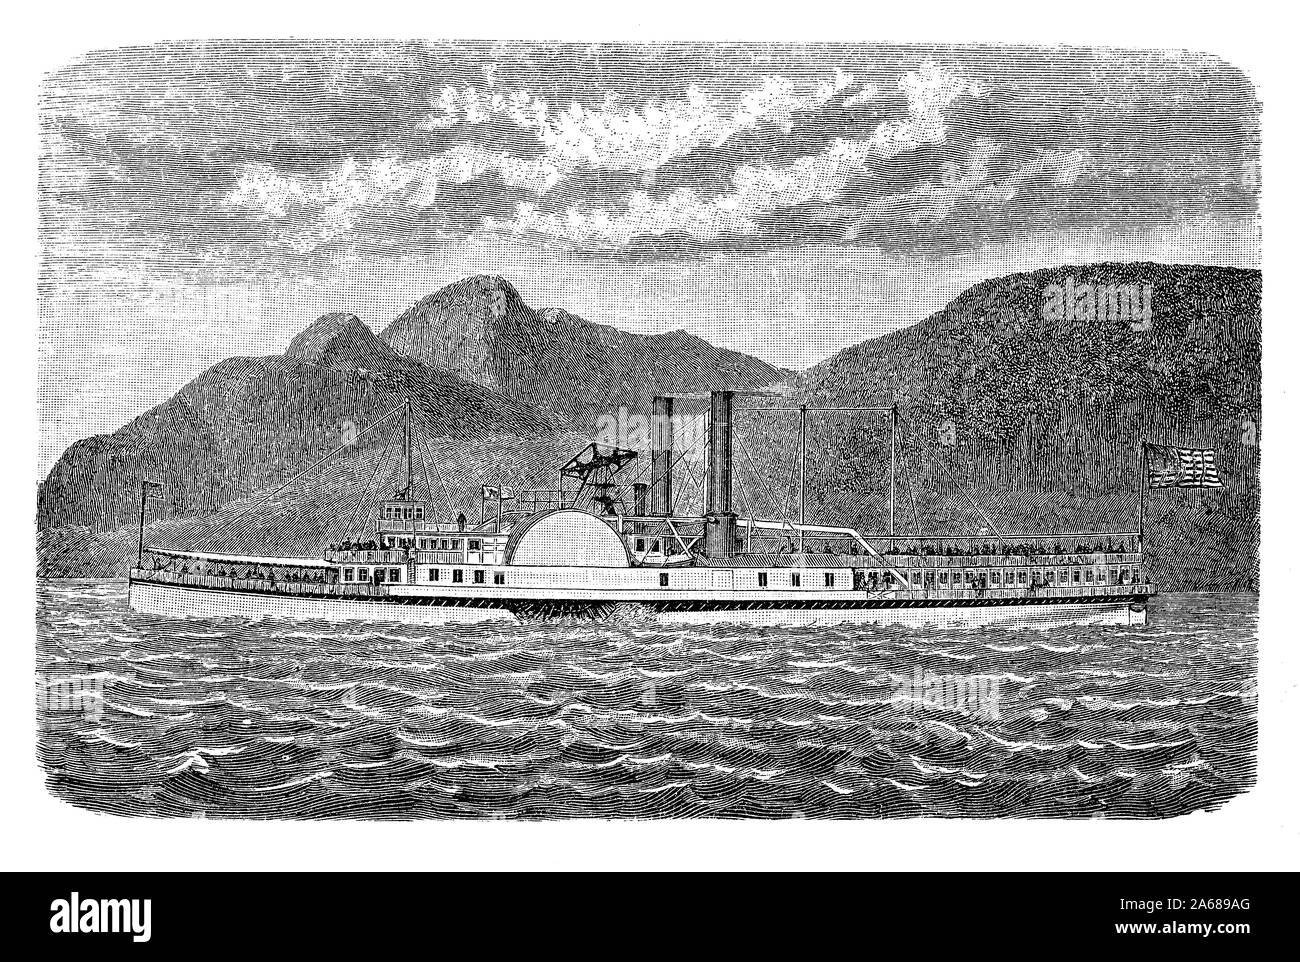 - En bateau à vapeur avec sidewheel pagayeurs pour une rapidité de transport - le transport de passagers et de marchandises sur le fleuve Hudson Banque D'Images